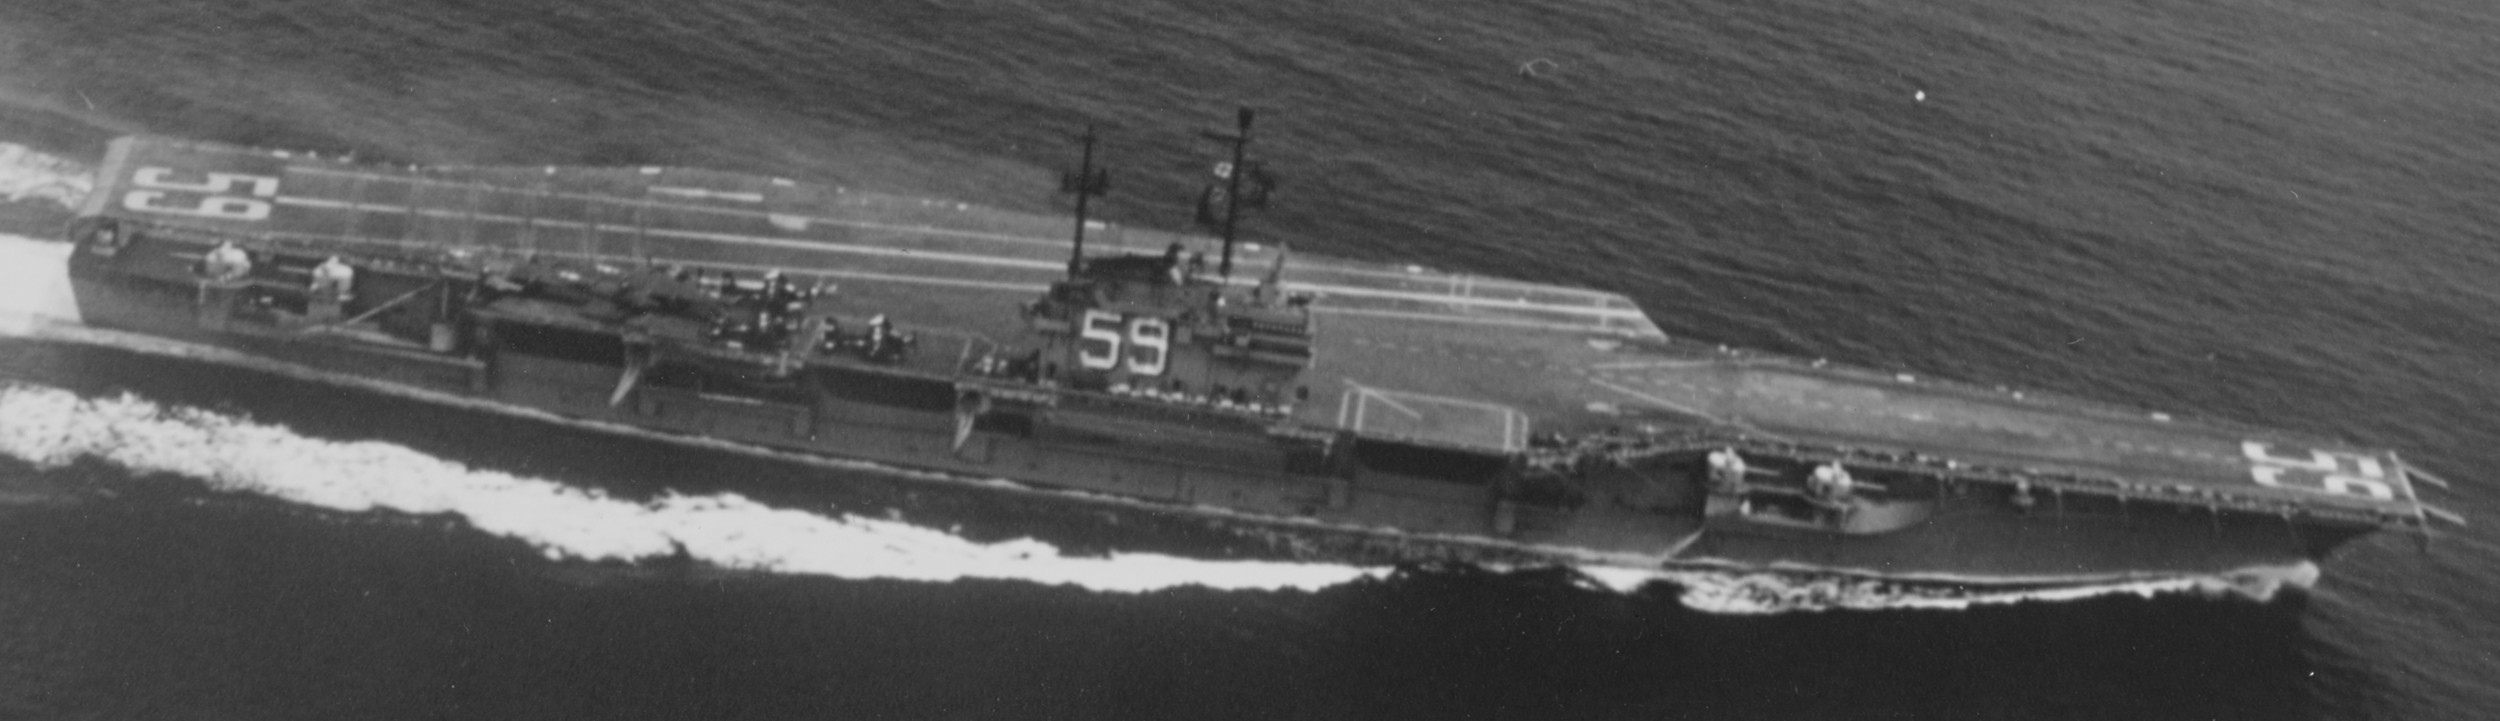 cv-59 uss forrestal aircraft carrier us navy 25